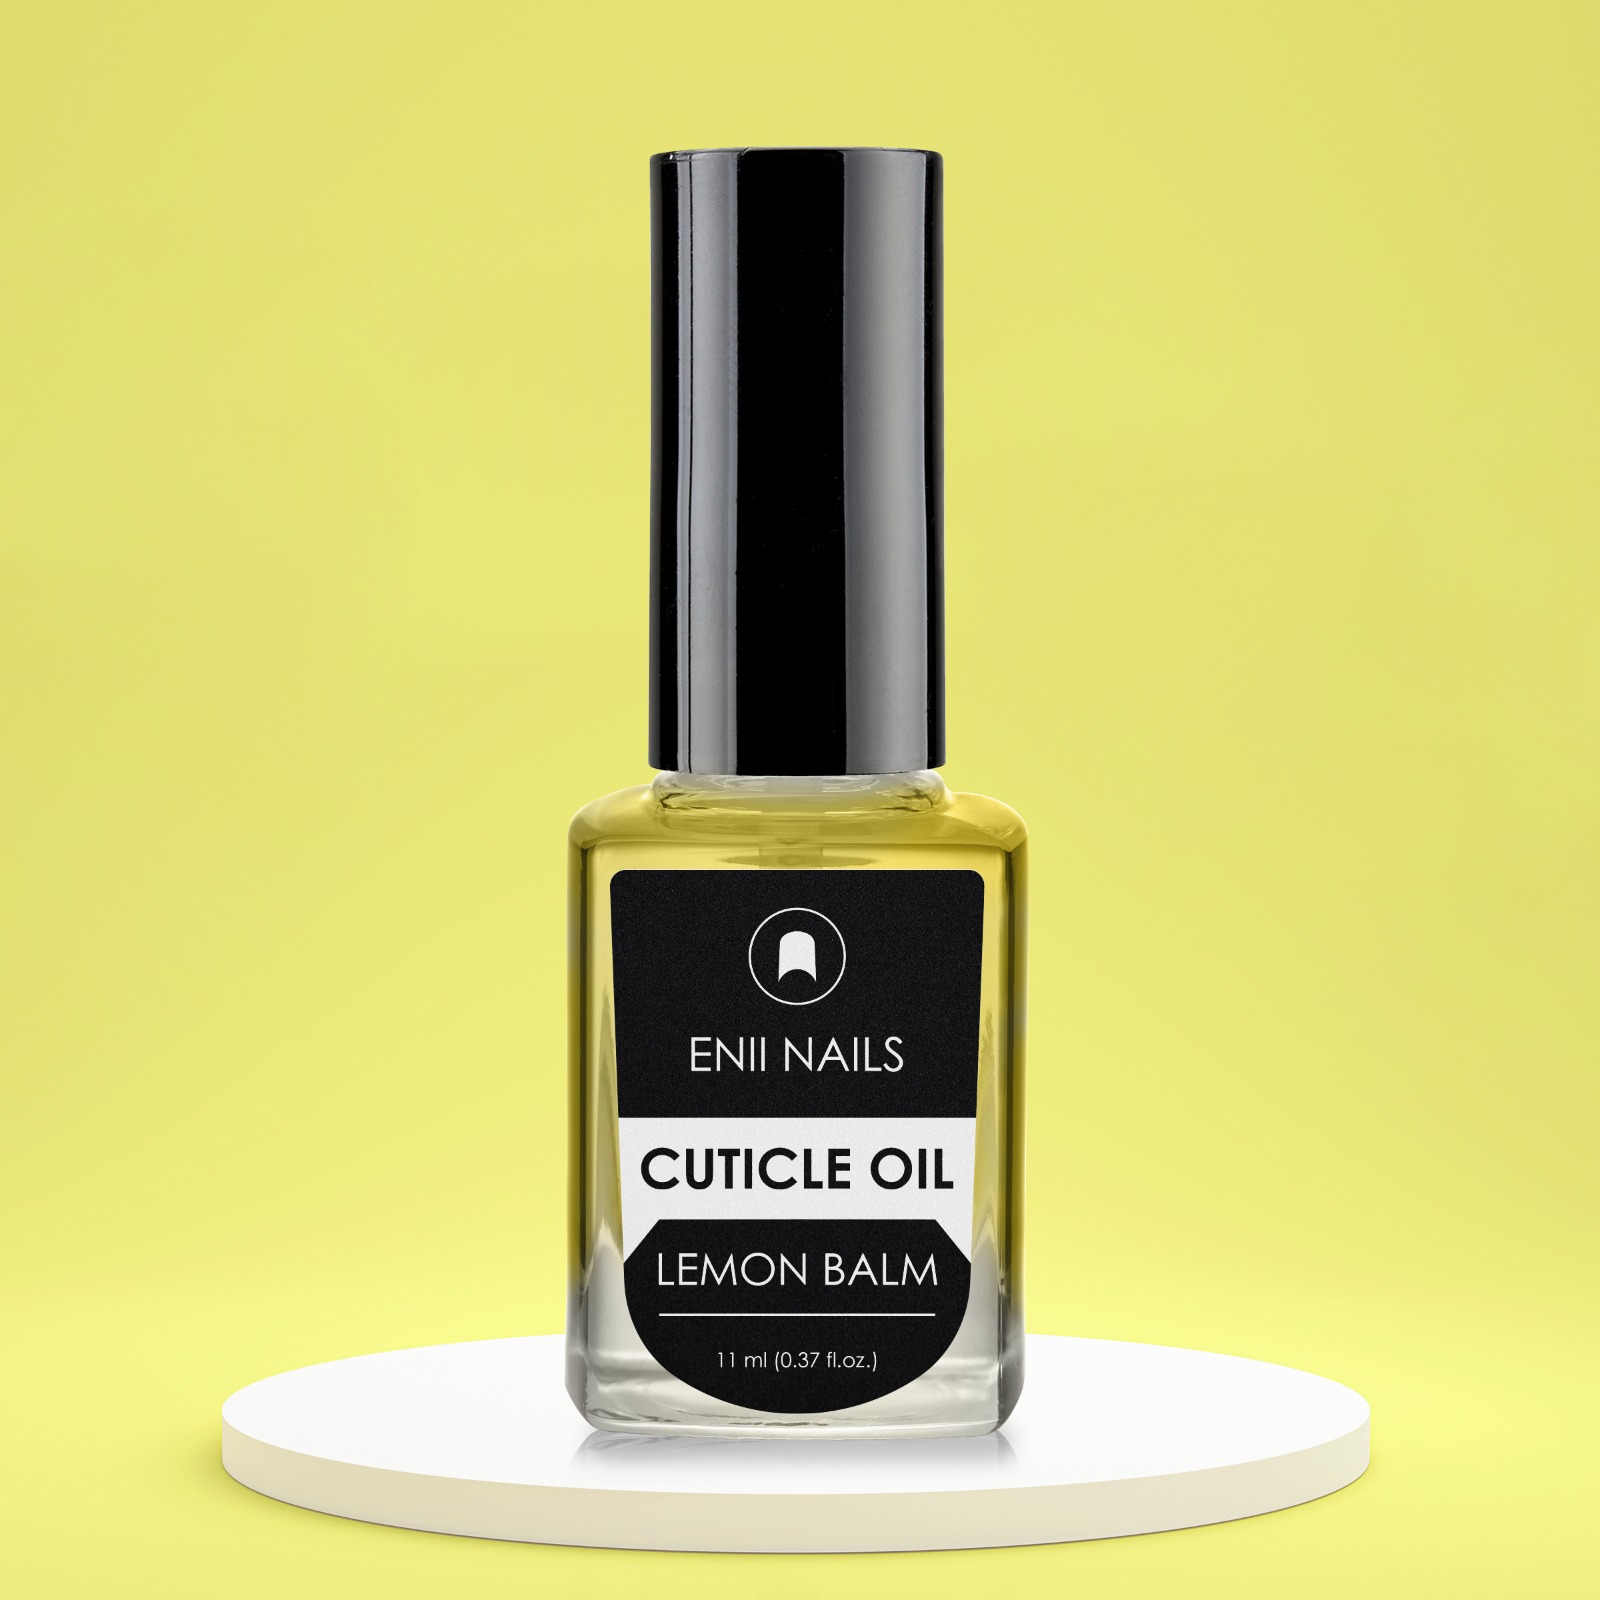 CUTICLE OIL